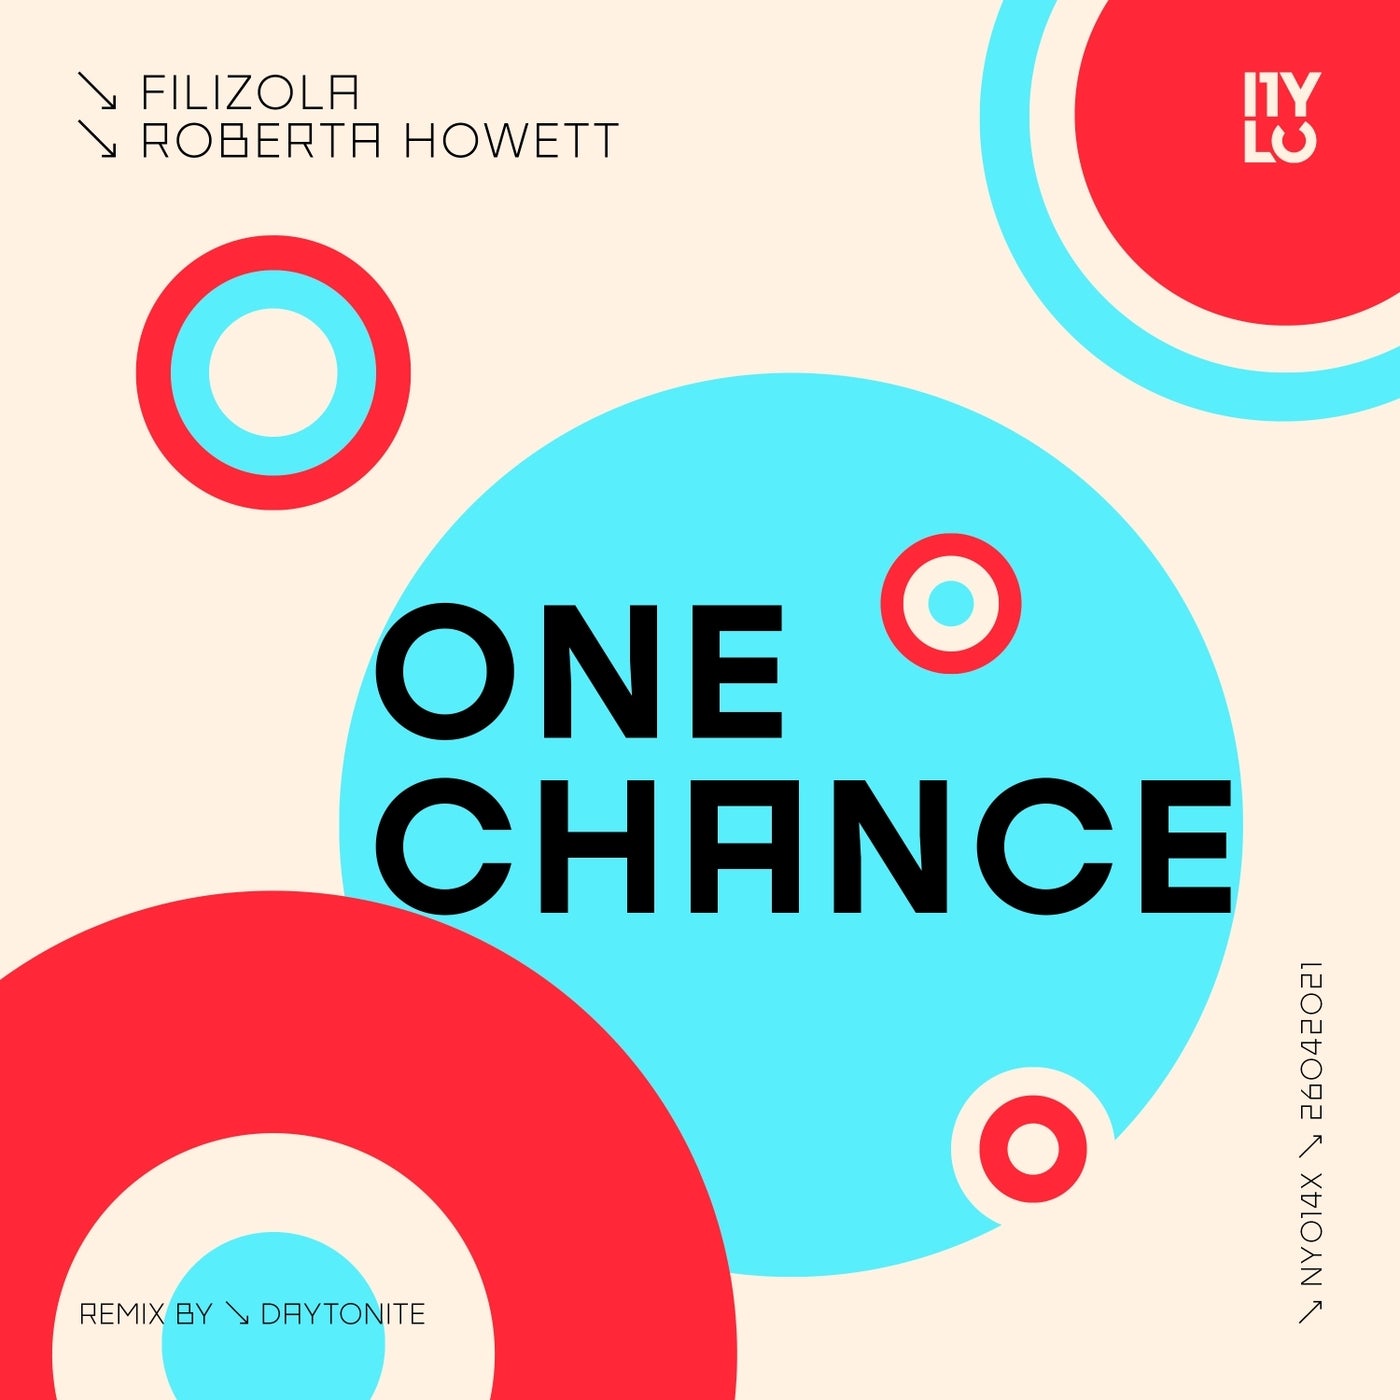 Filizola, Roberta Howett – One Chance [NY014X]